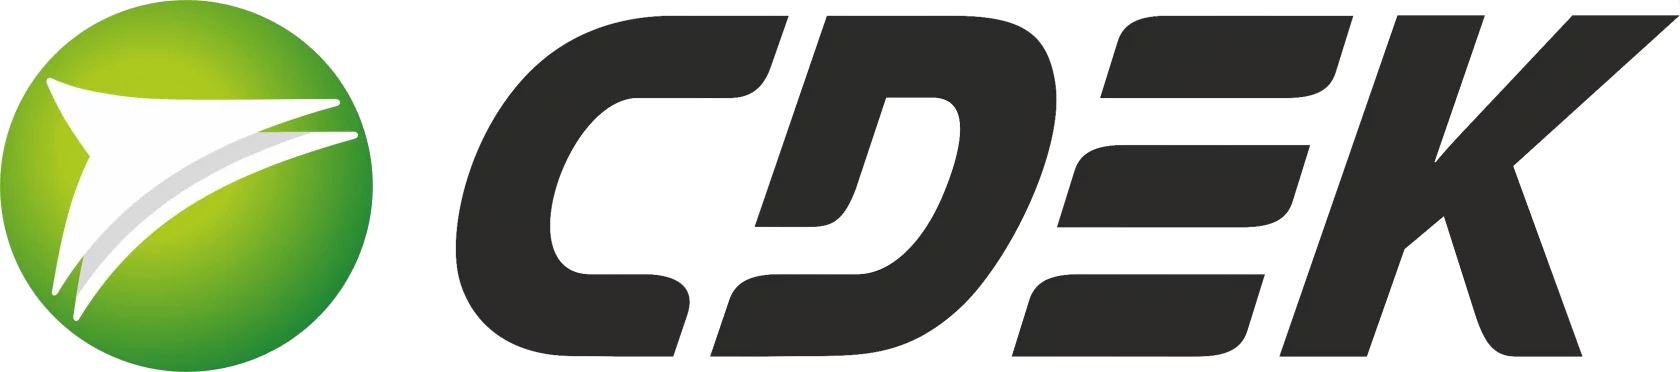 Логотип курьерской службы CDEK.